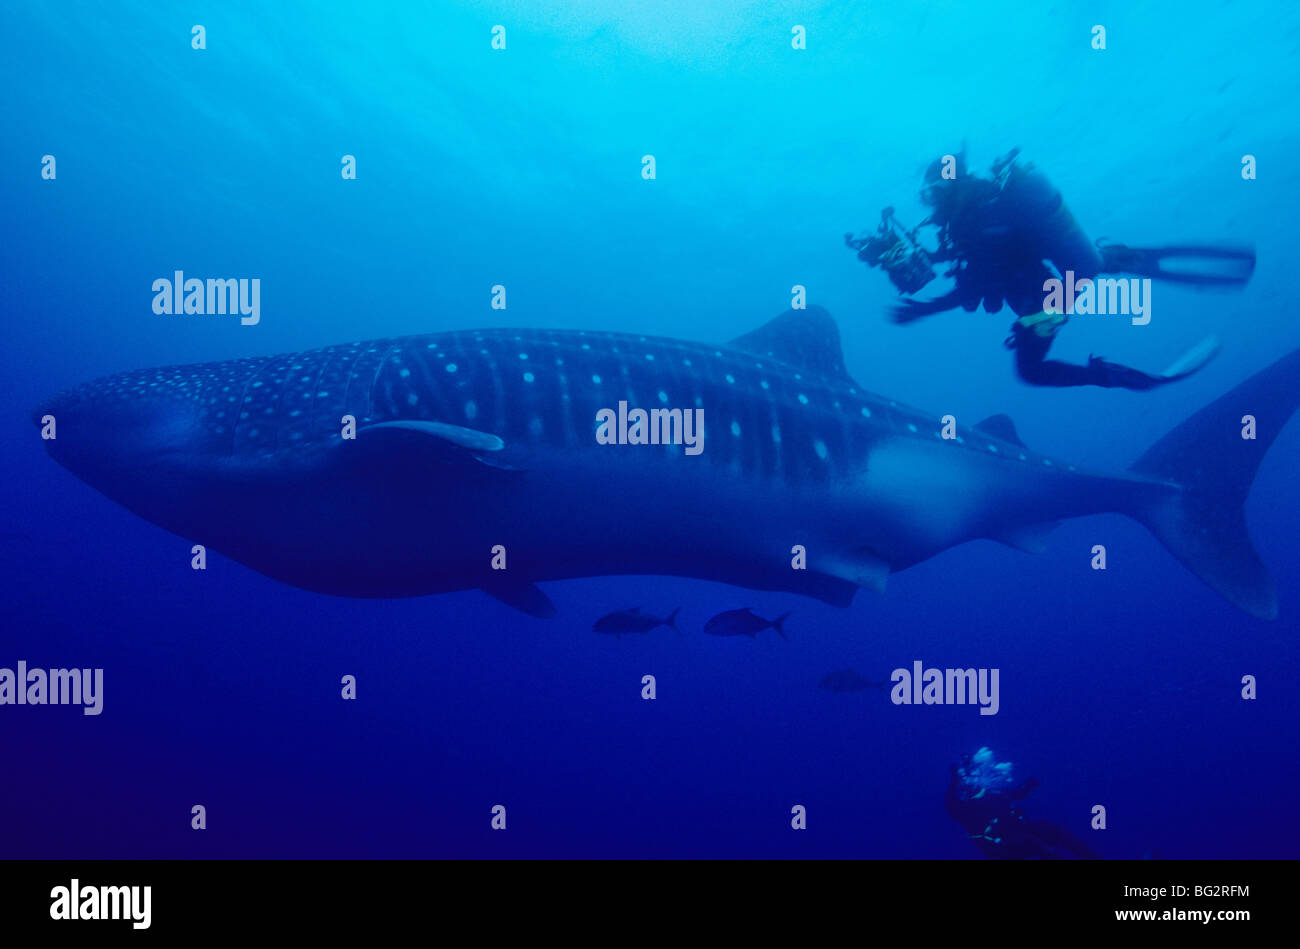 Requin-baleine, Fonds sous-marins au large de l'île de Darwin. Galapagos. L'Équateur. Rhincodon typus. Tourisme plongée. La plongée sous-marine. Poissons de l'océan. Banque D'Images